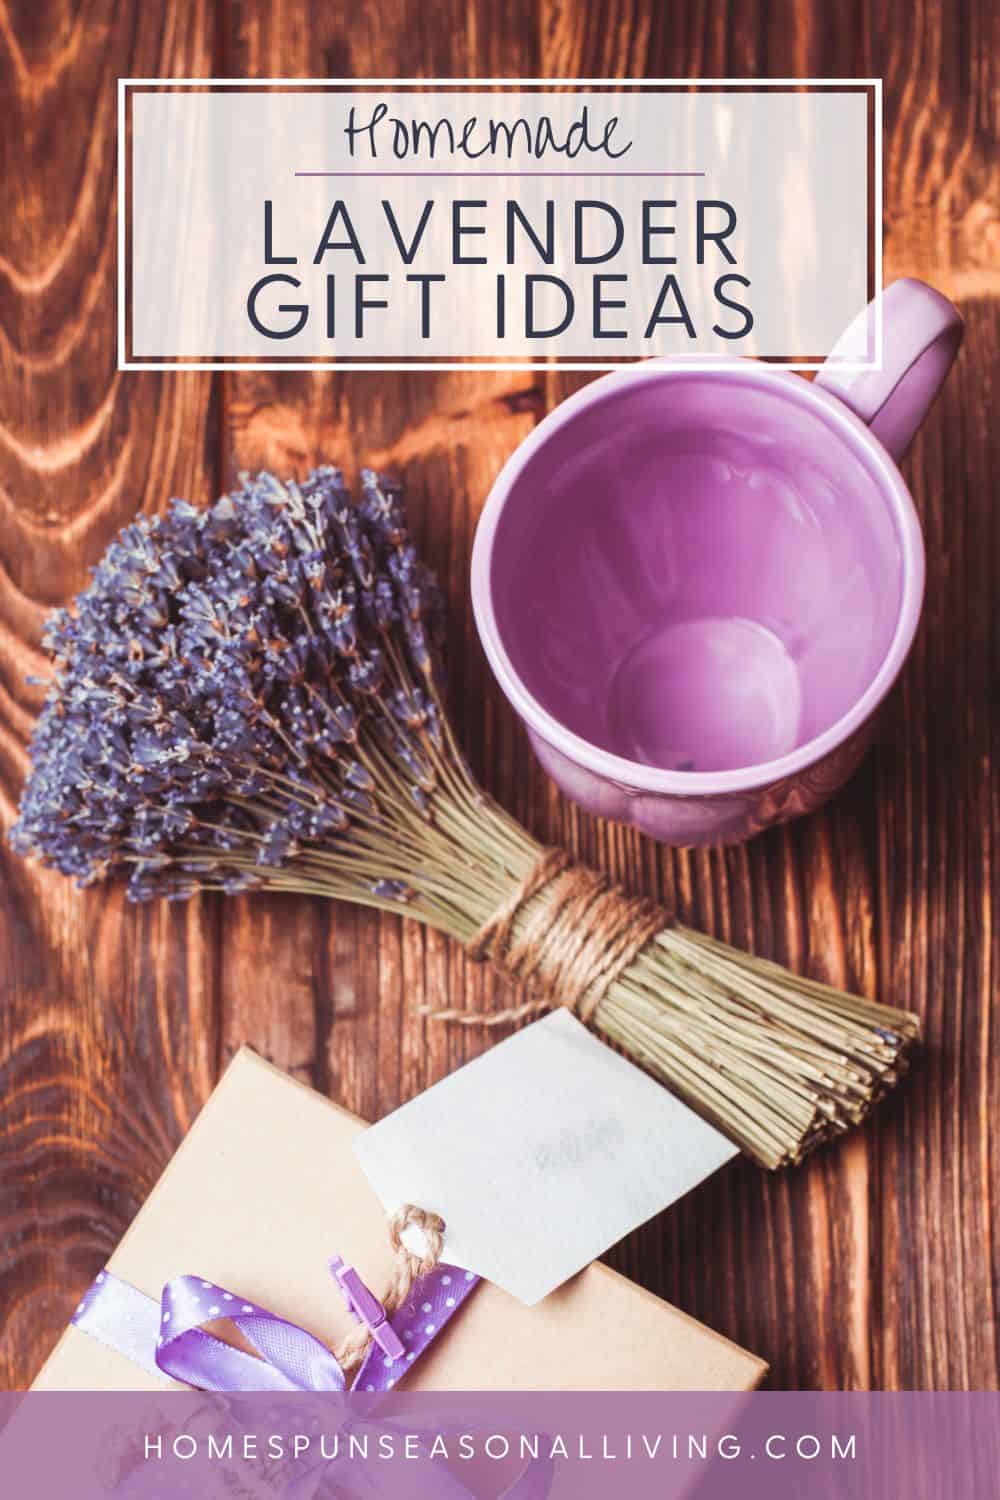 Pin on Gift ideas